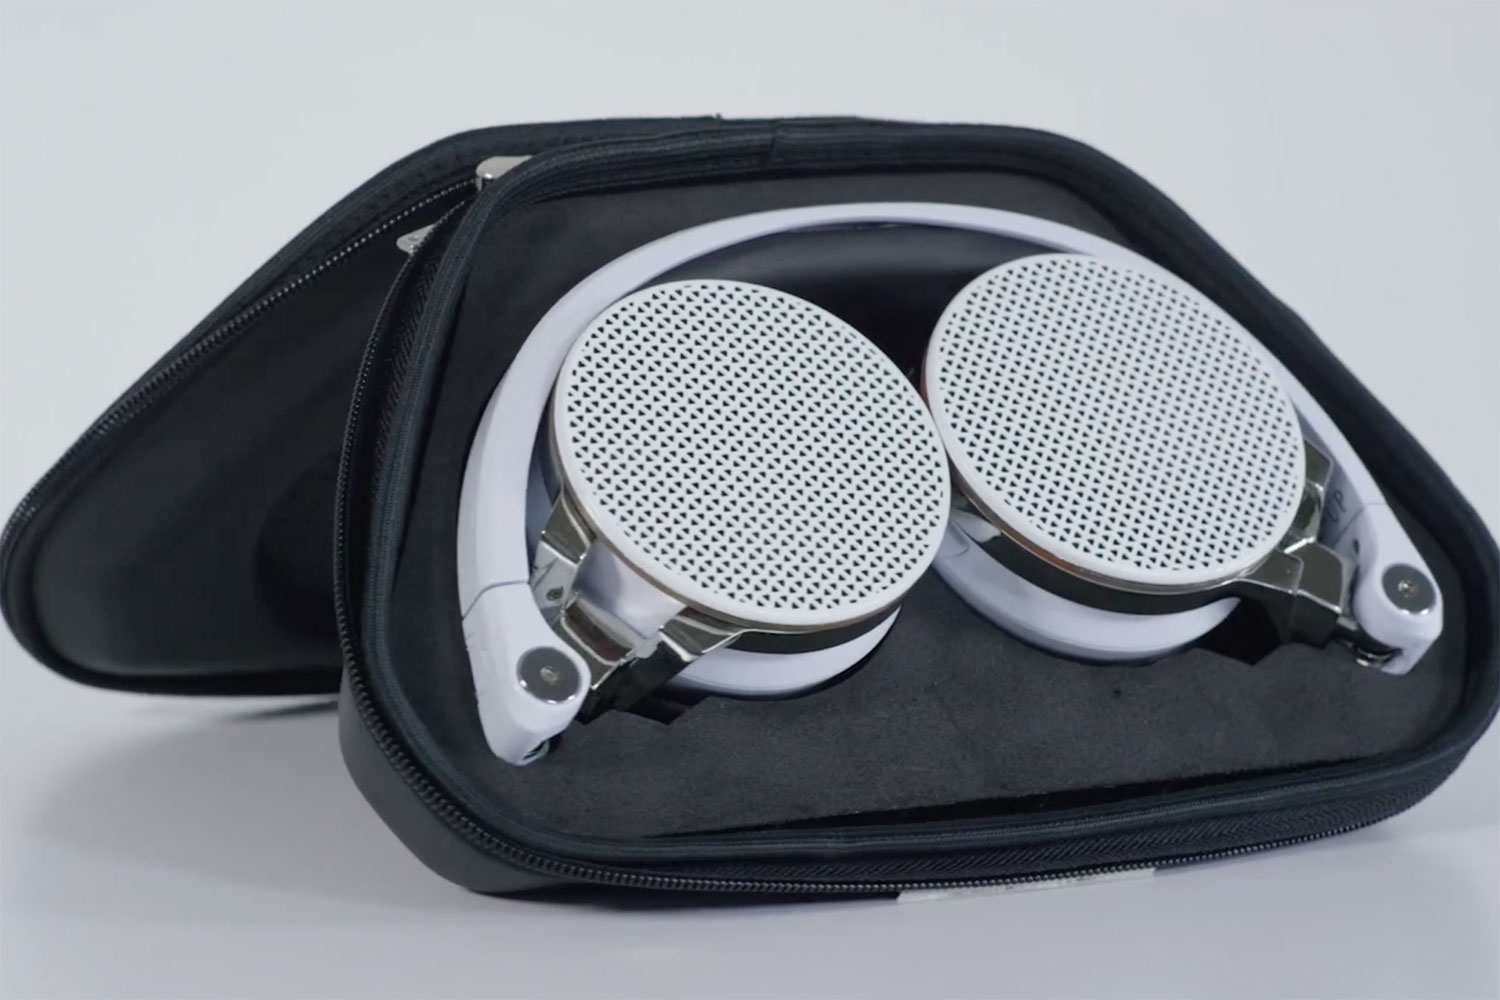 boomphones re up headphones speaker kickstarter 3